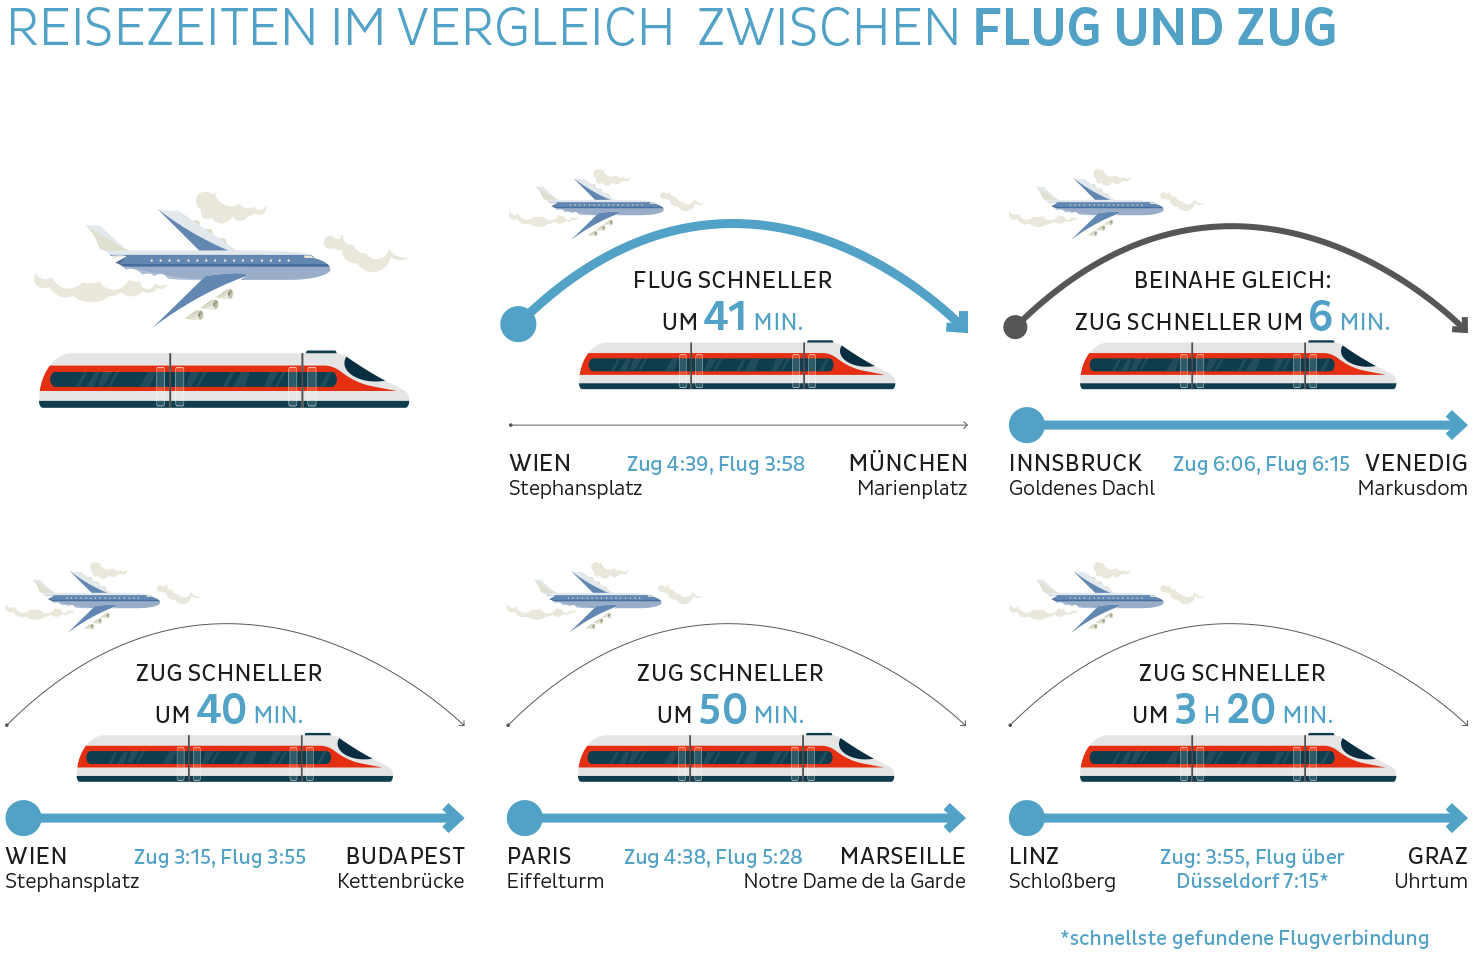 Grafik vergleicht die Reisezeiten zwischen Flugzeug und Zug: Wien-München Flug um 41 min schneller, Innsbruck-Venidig gleich schnell, Wien-Budapest Zug um 40 min, Paris-Marseille um 50 min und Linz-Graz um 3 Stunden 20 Minuten schneller.